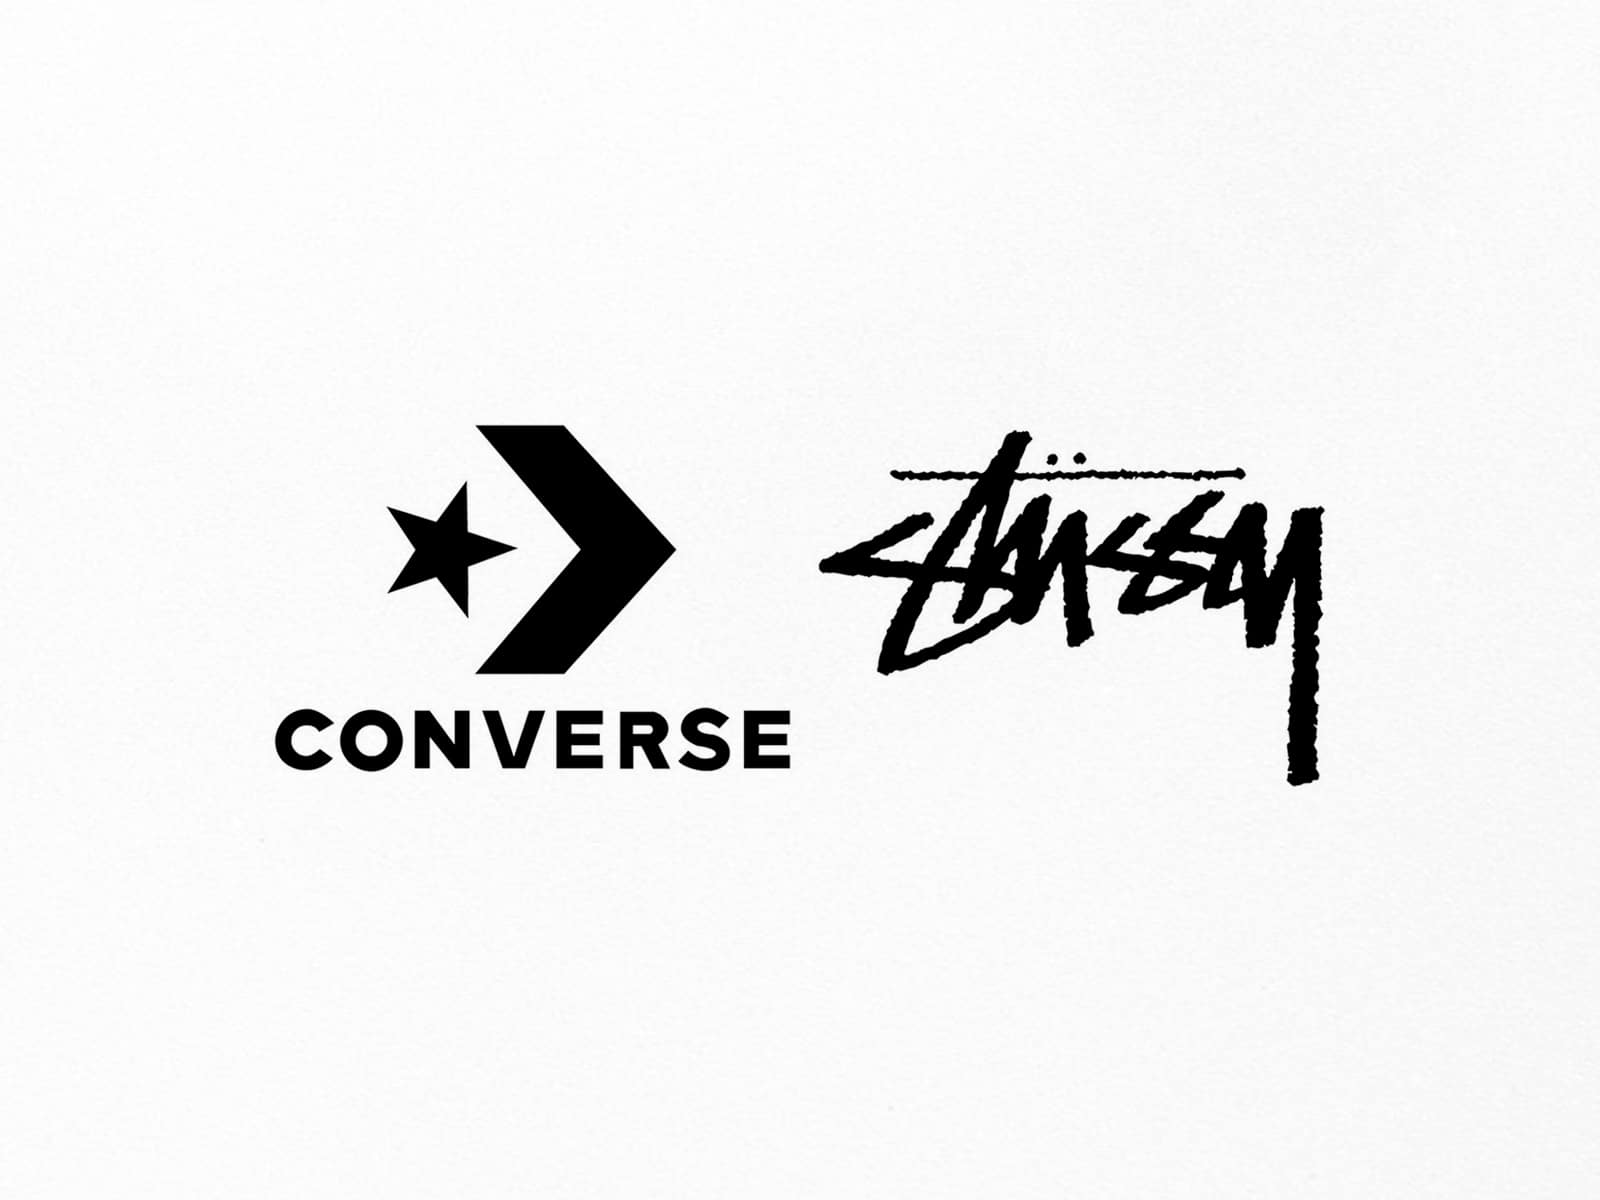 Los rumores apuntan a una nueva colaboración entre Stüssy y Converse